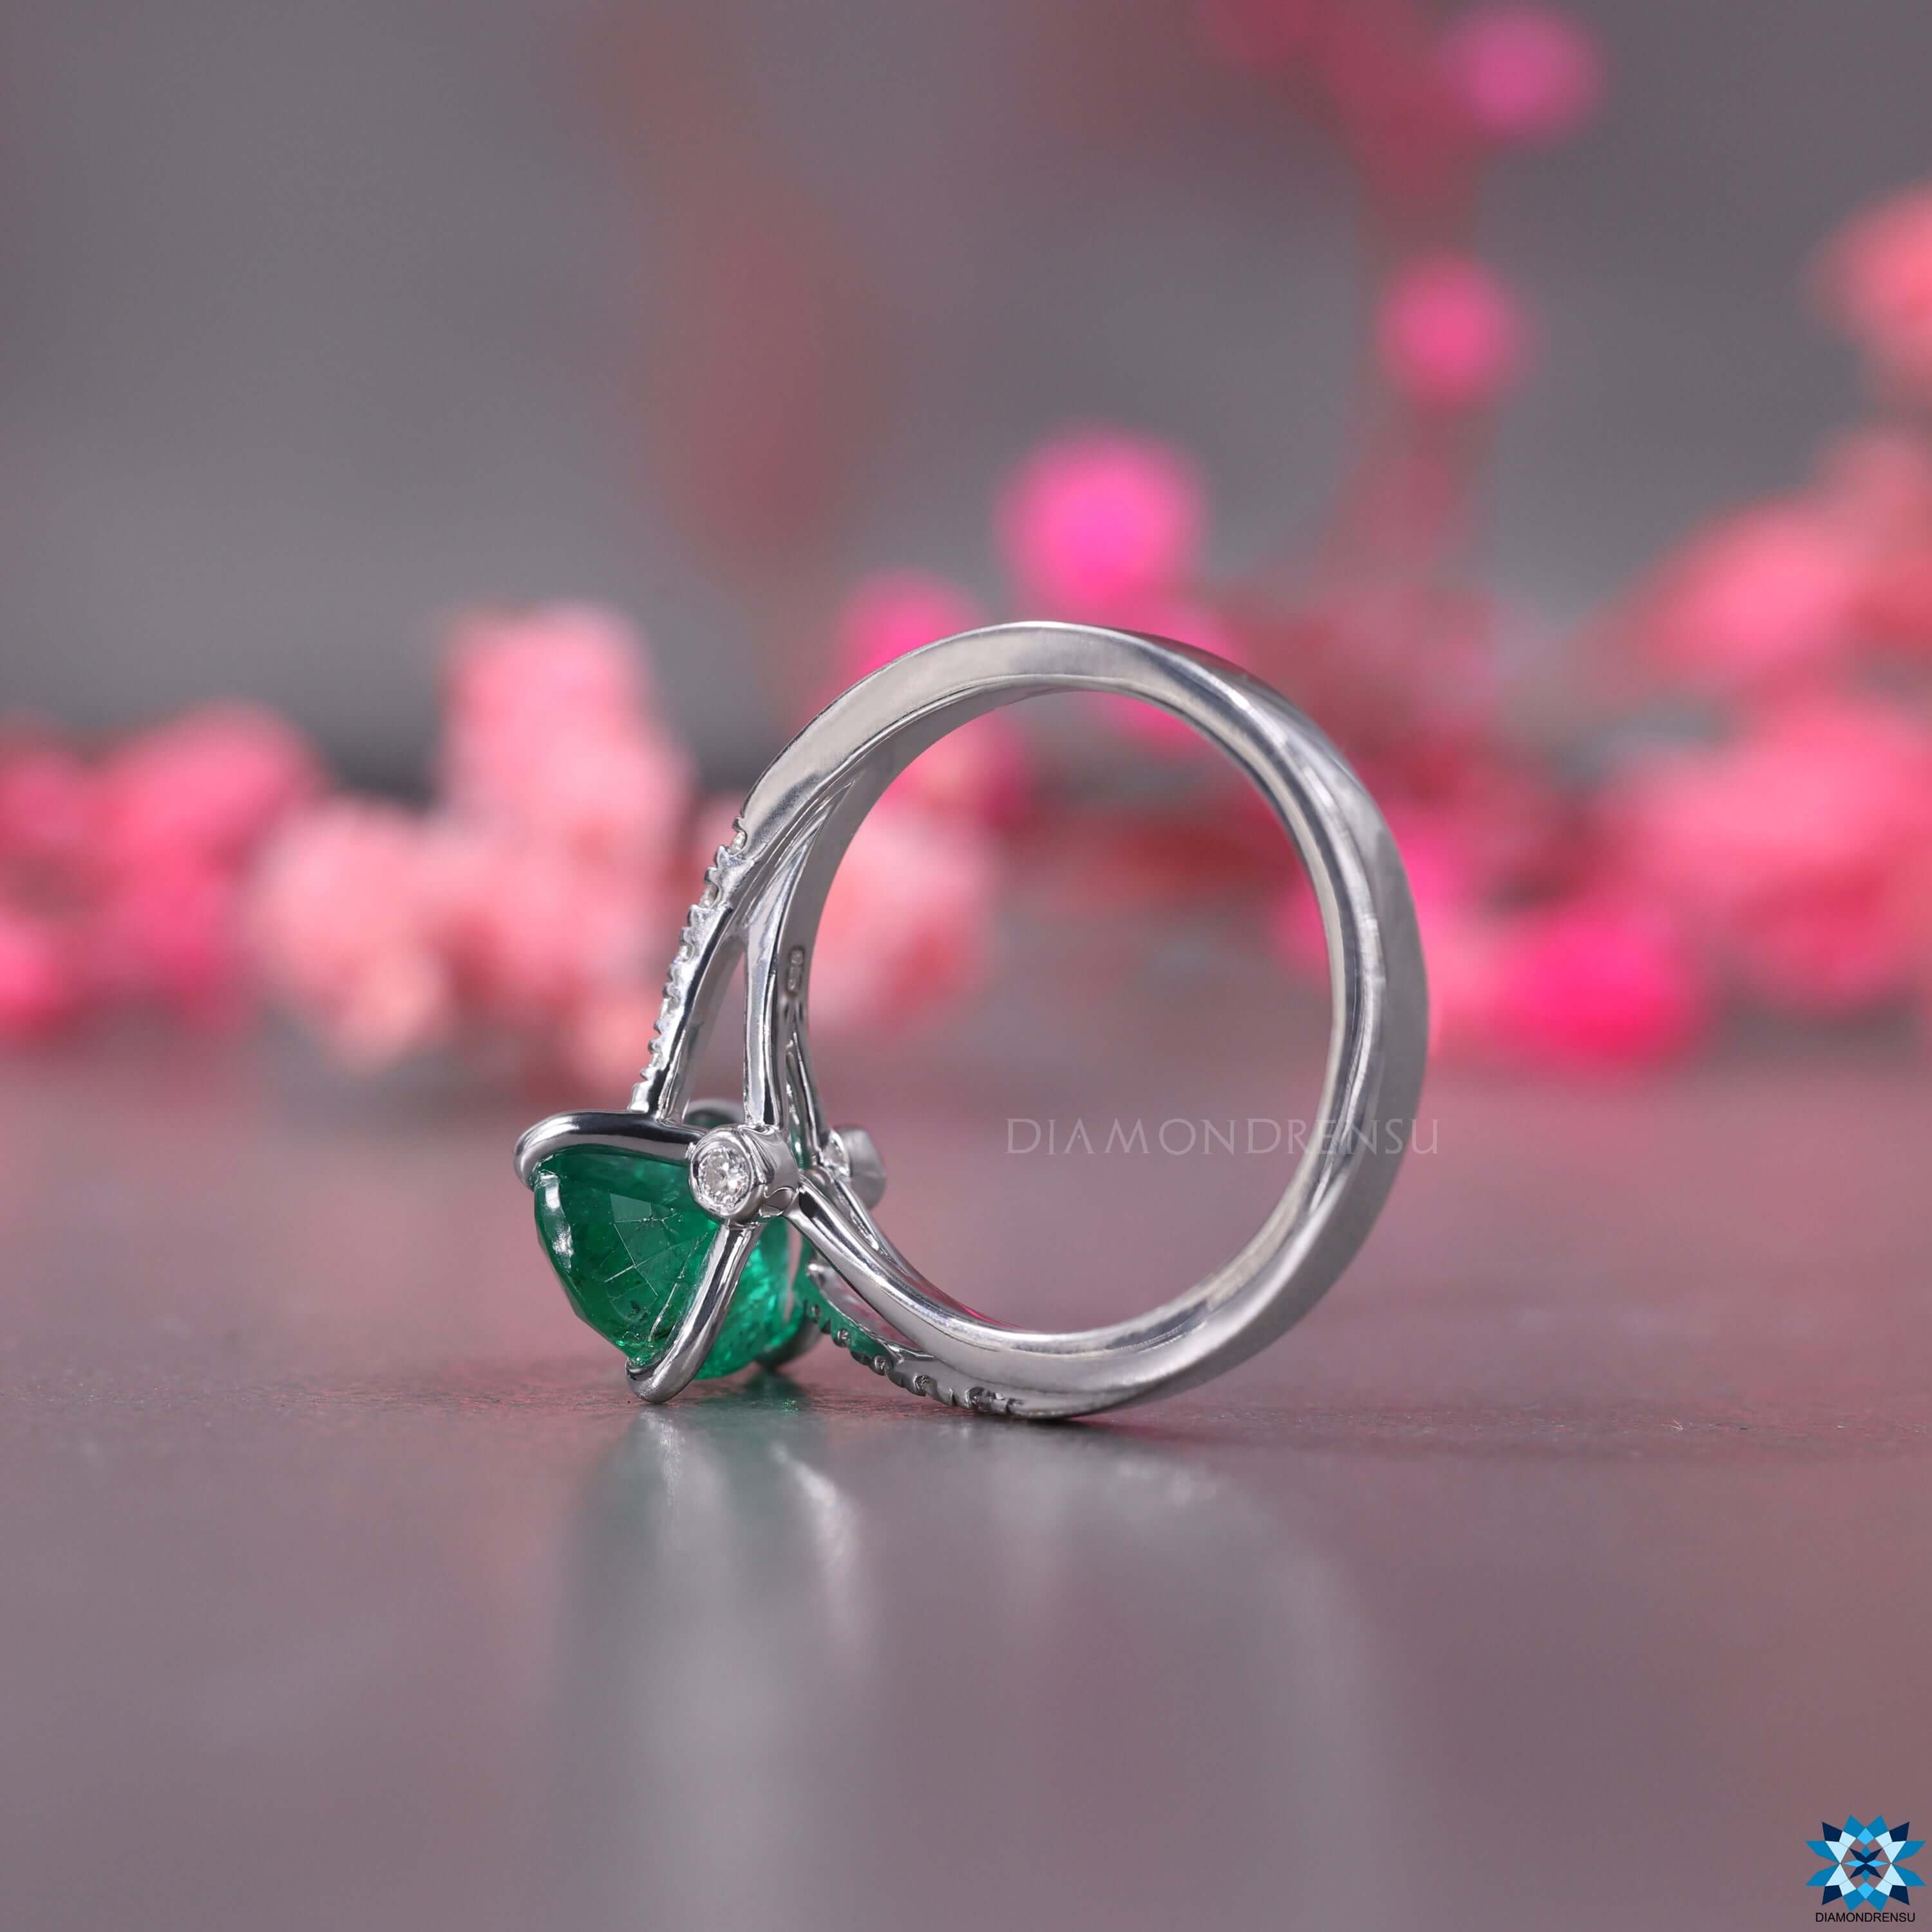 natural gemstone ring - diamondrensu